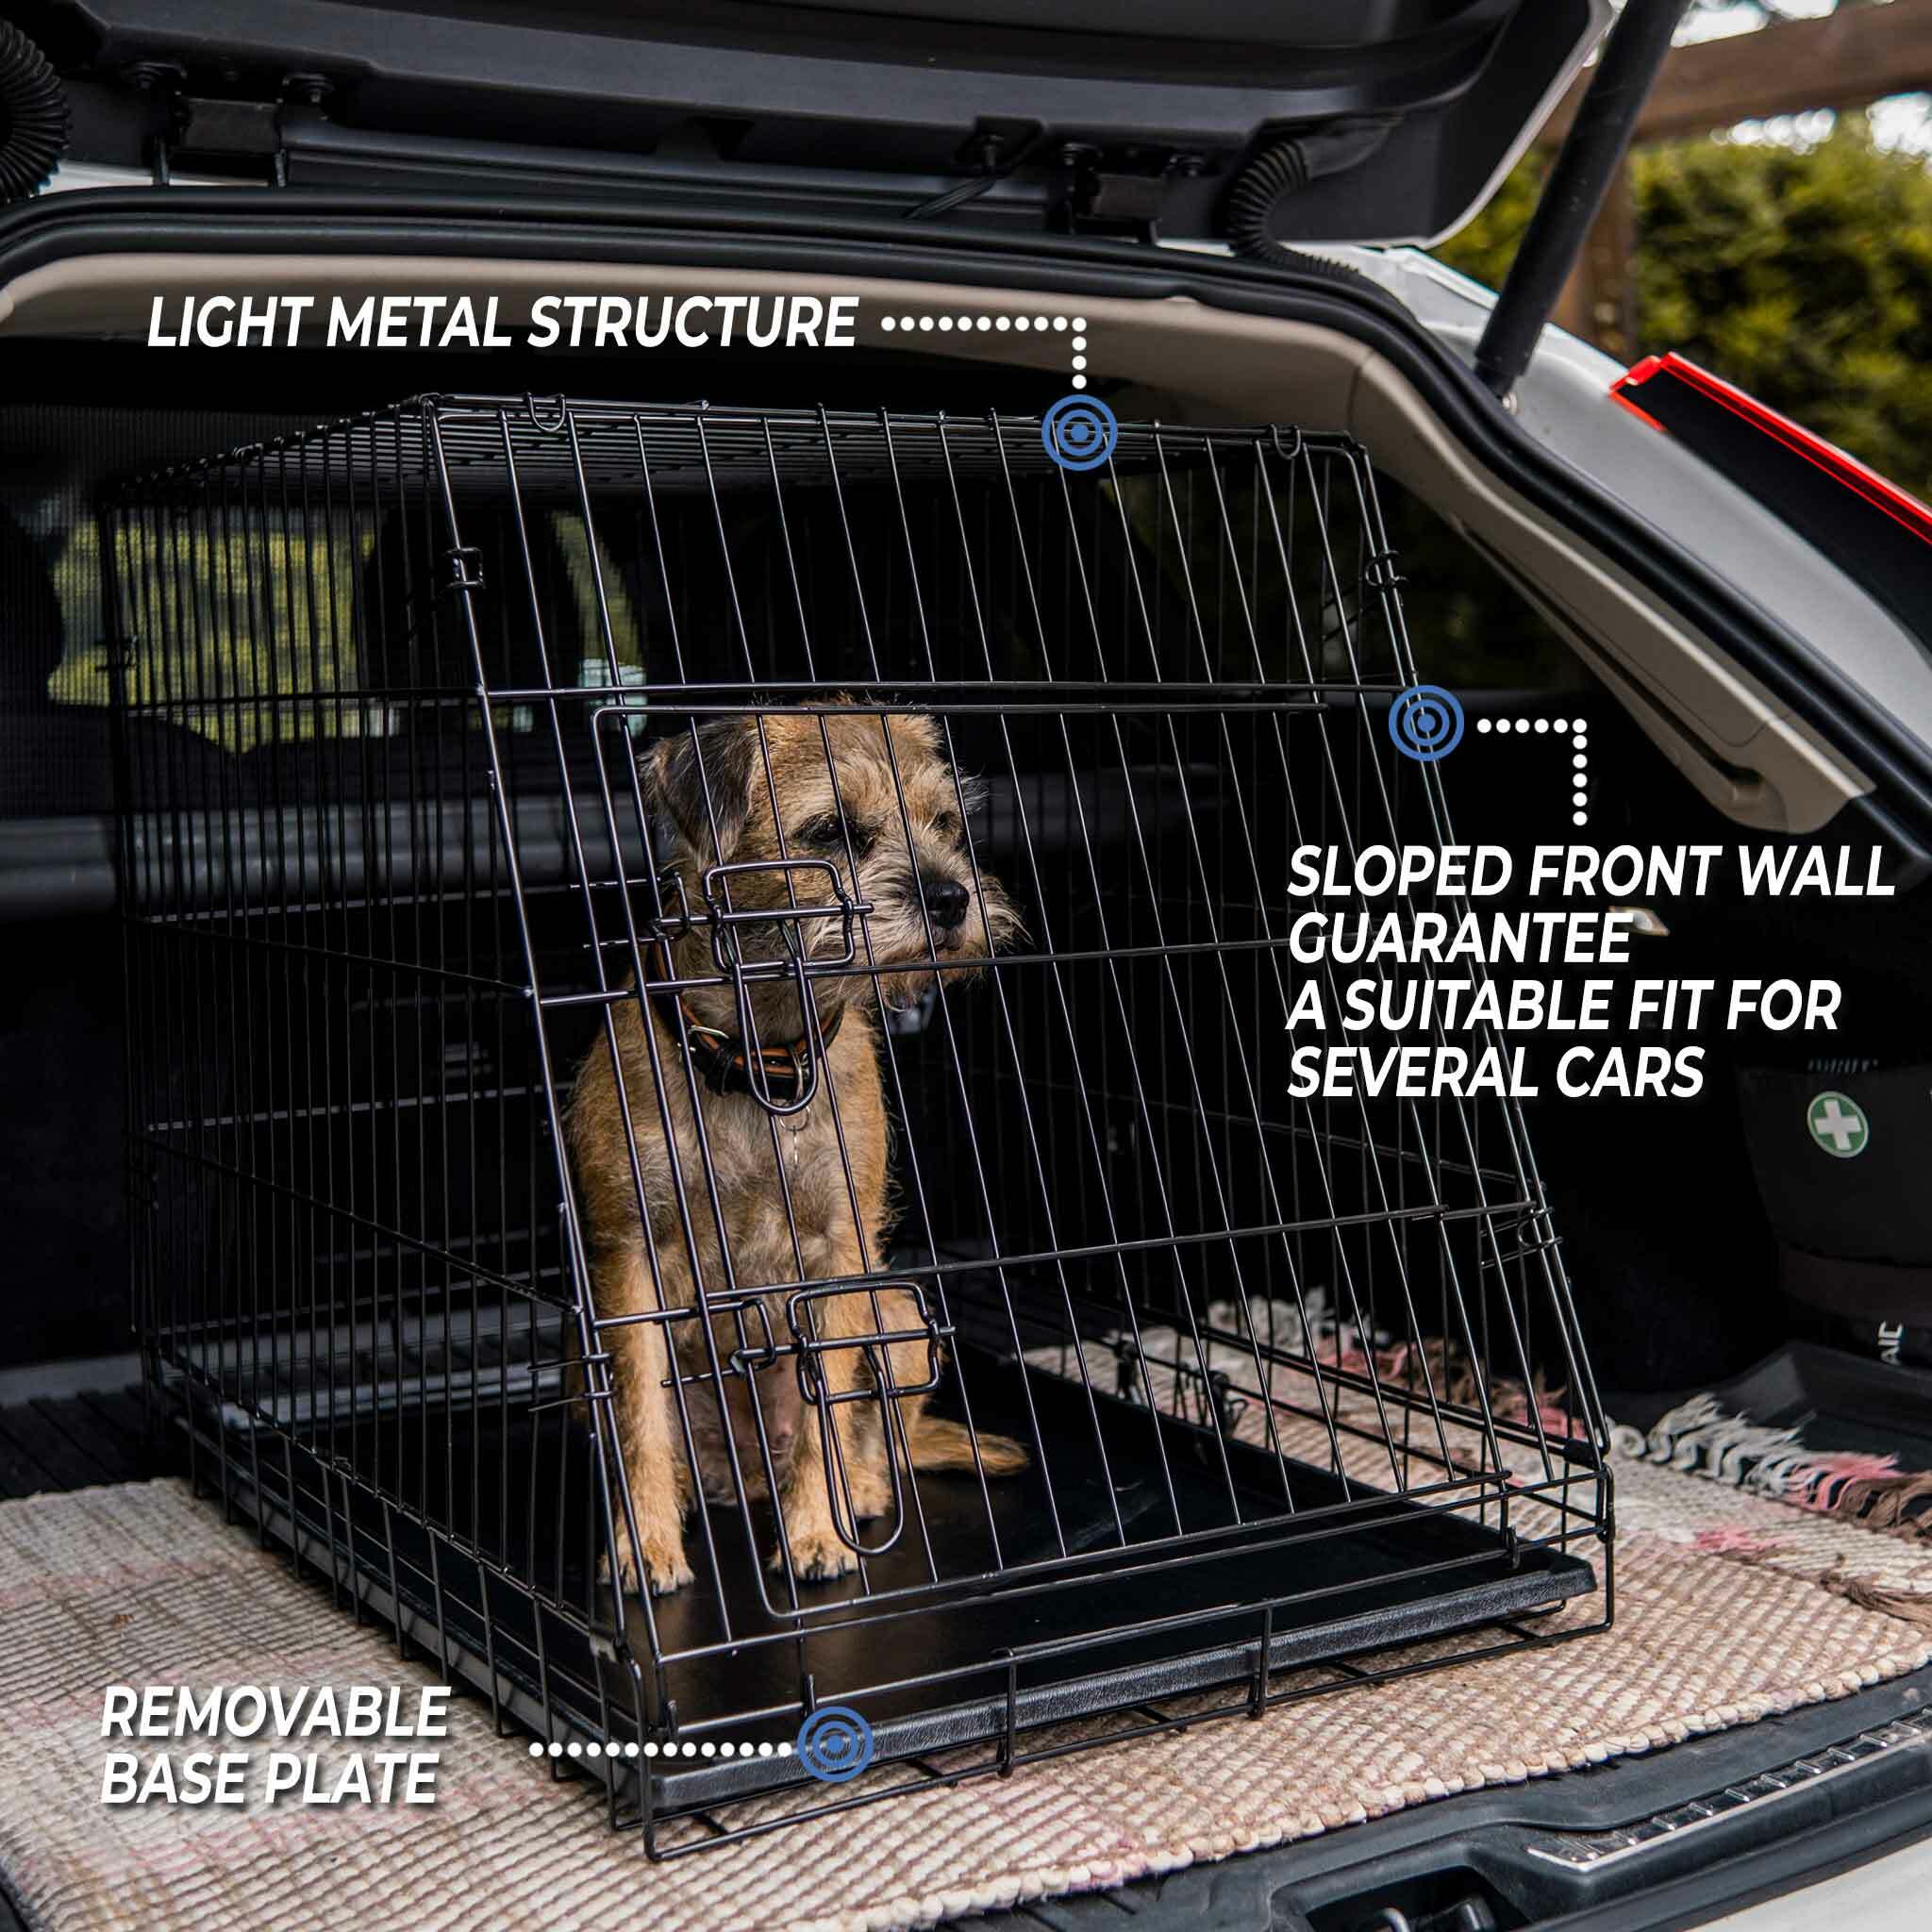 Trekker Cage de transport chien XL 97x90x69cm - 199,00 EUR - Nordic ProStore